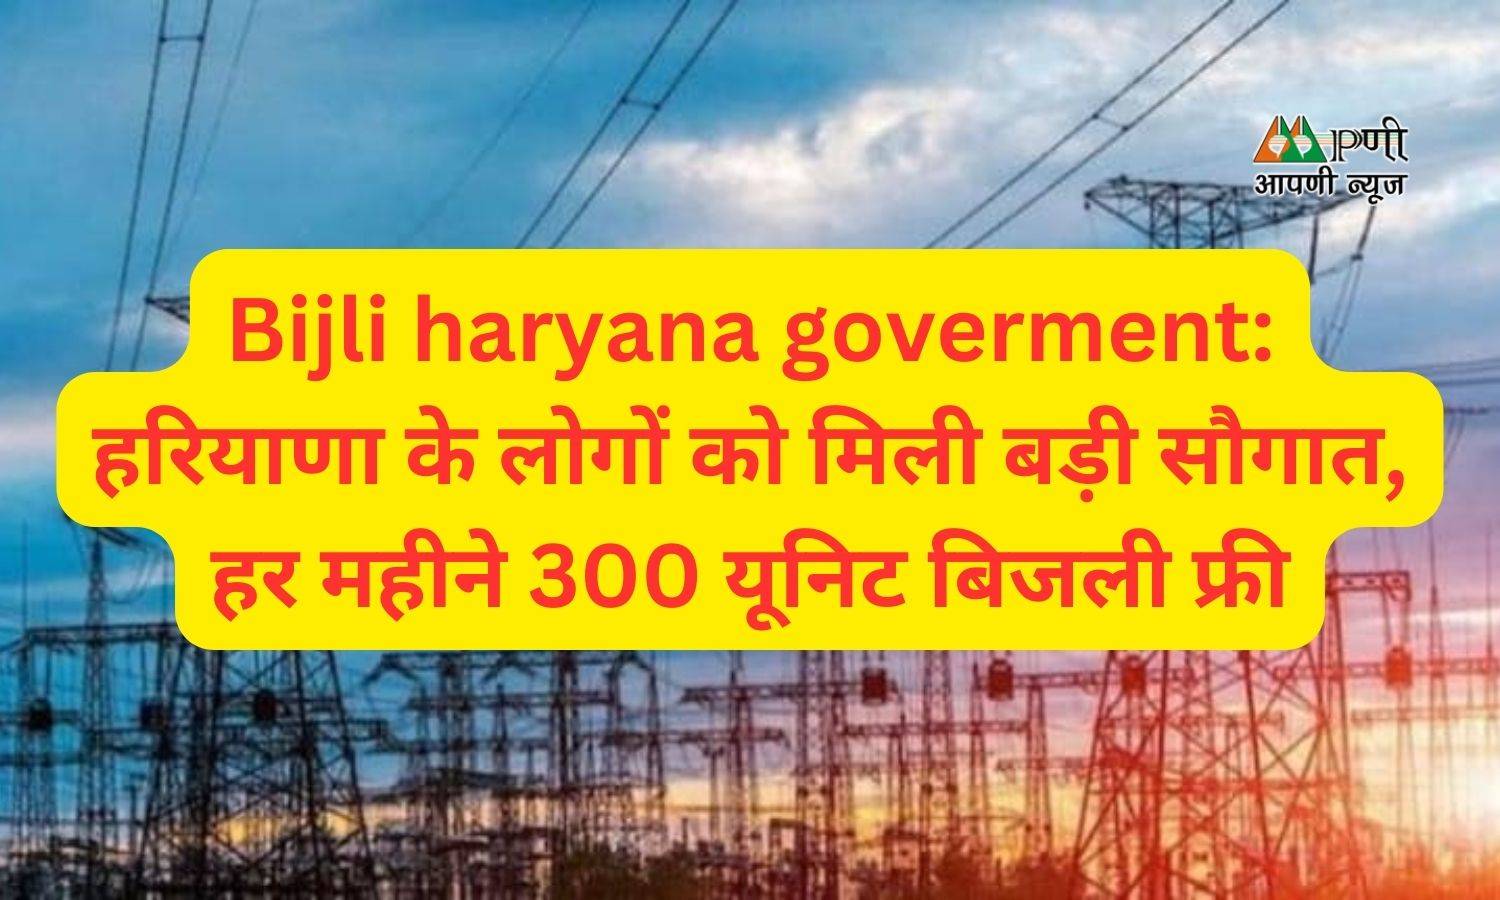 Bijli haryana goverment: हरियाणा के लोगों को मिली बड़ी सौगात, हर महीने 300 यूनिट बिजली फ्री